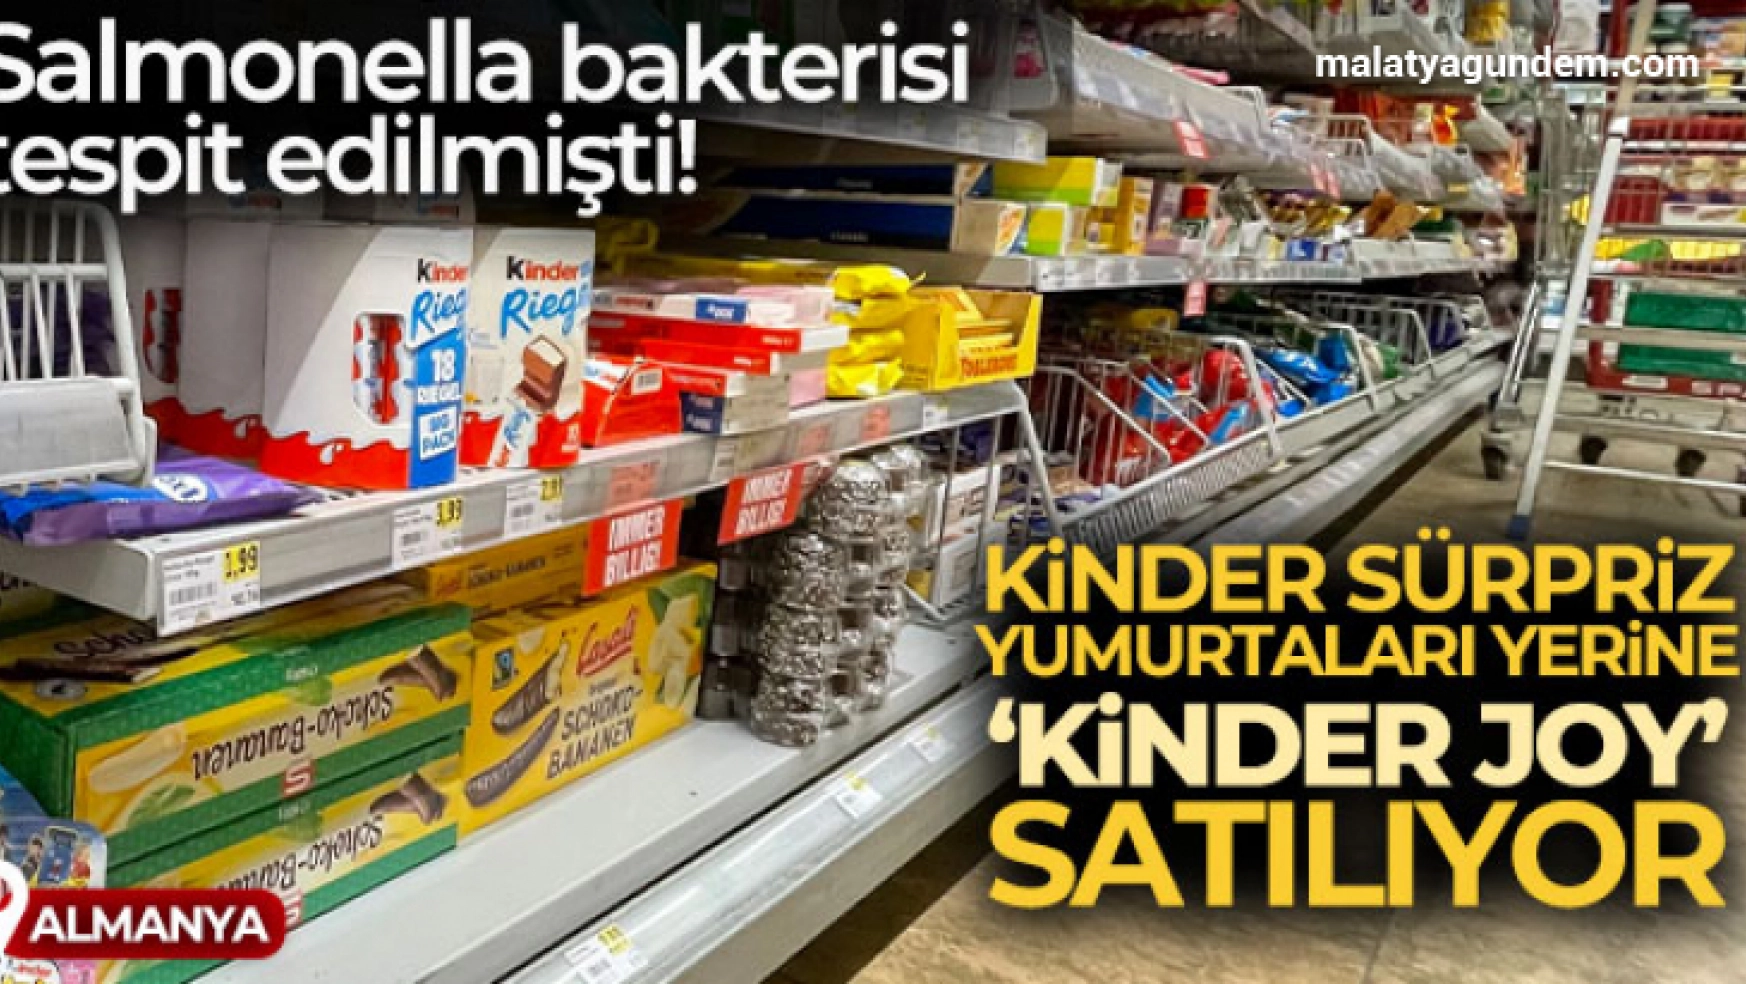 Almanya'da, Salmonella bakterisi tespit edilen Kinder sürpriz yumurtaları yerine 'Kinder Joy' satılıyor